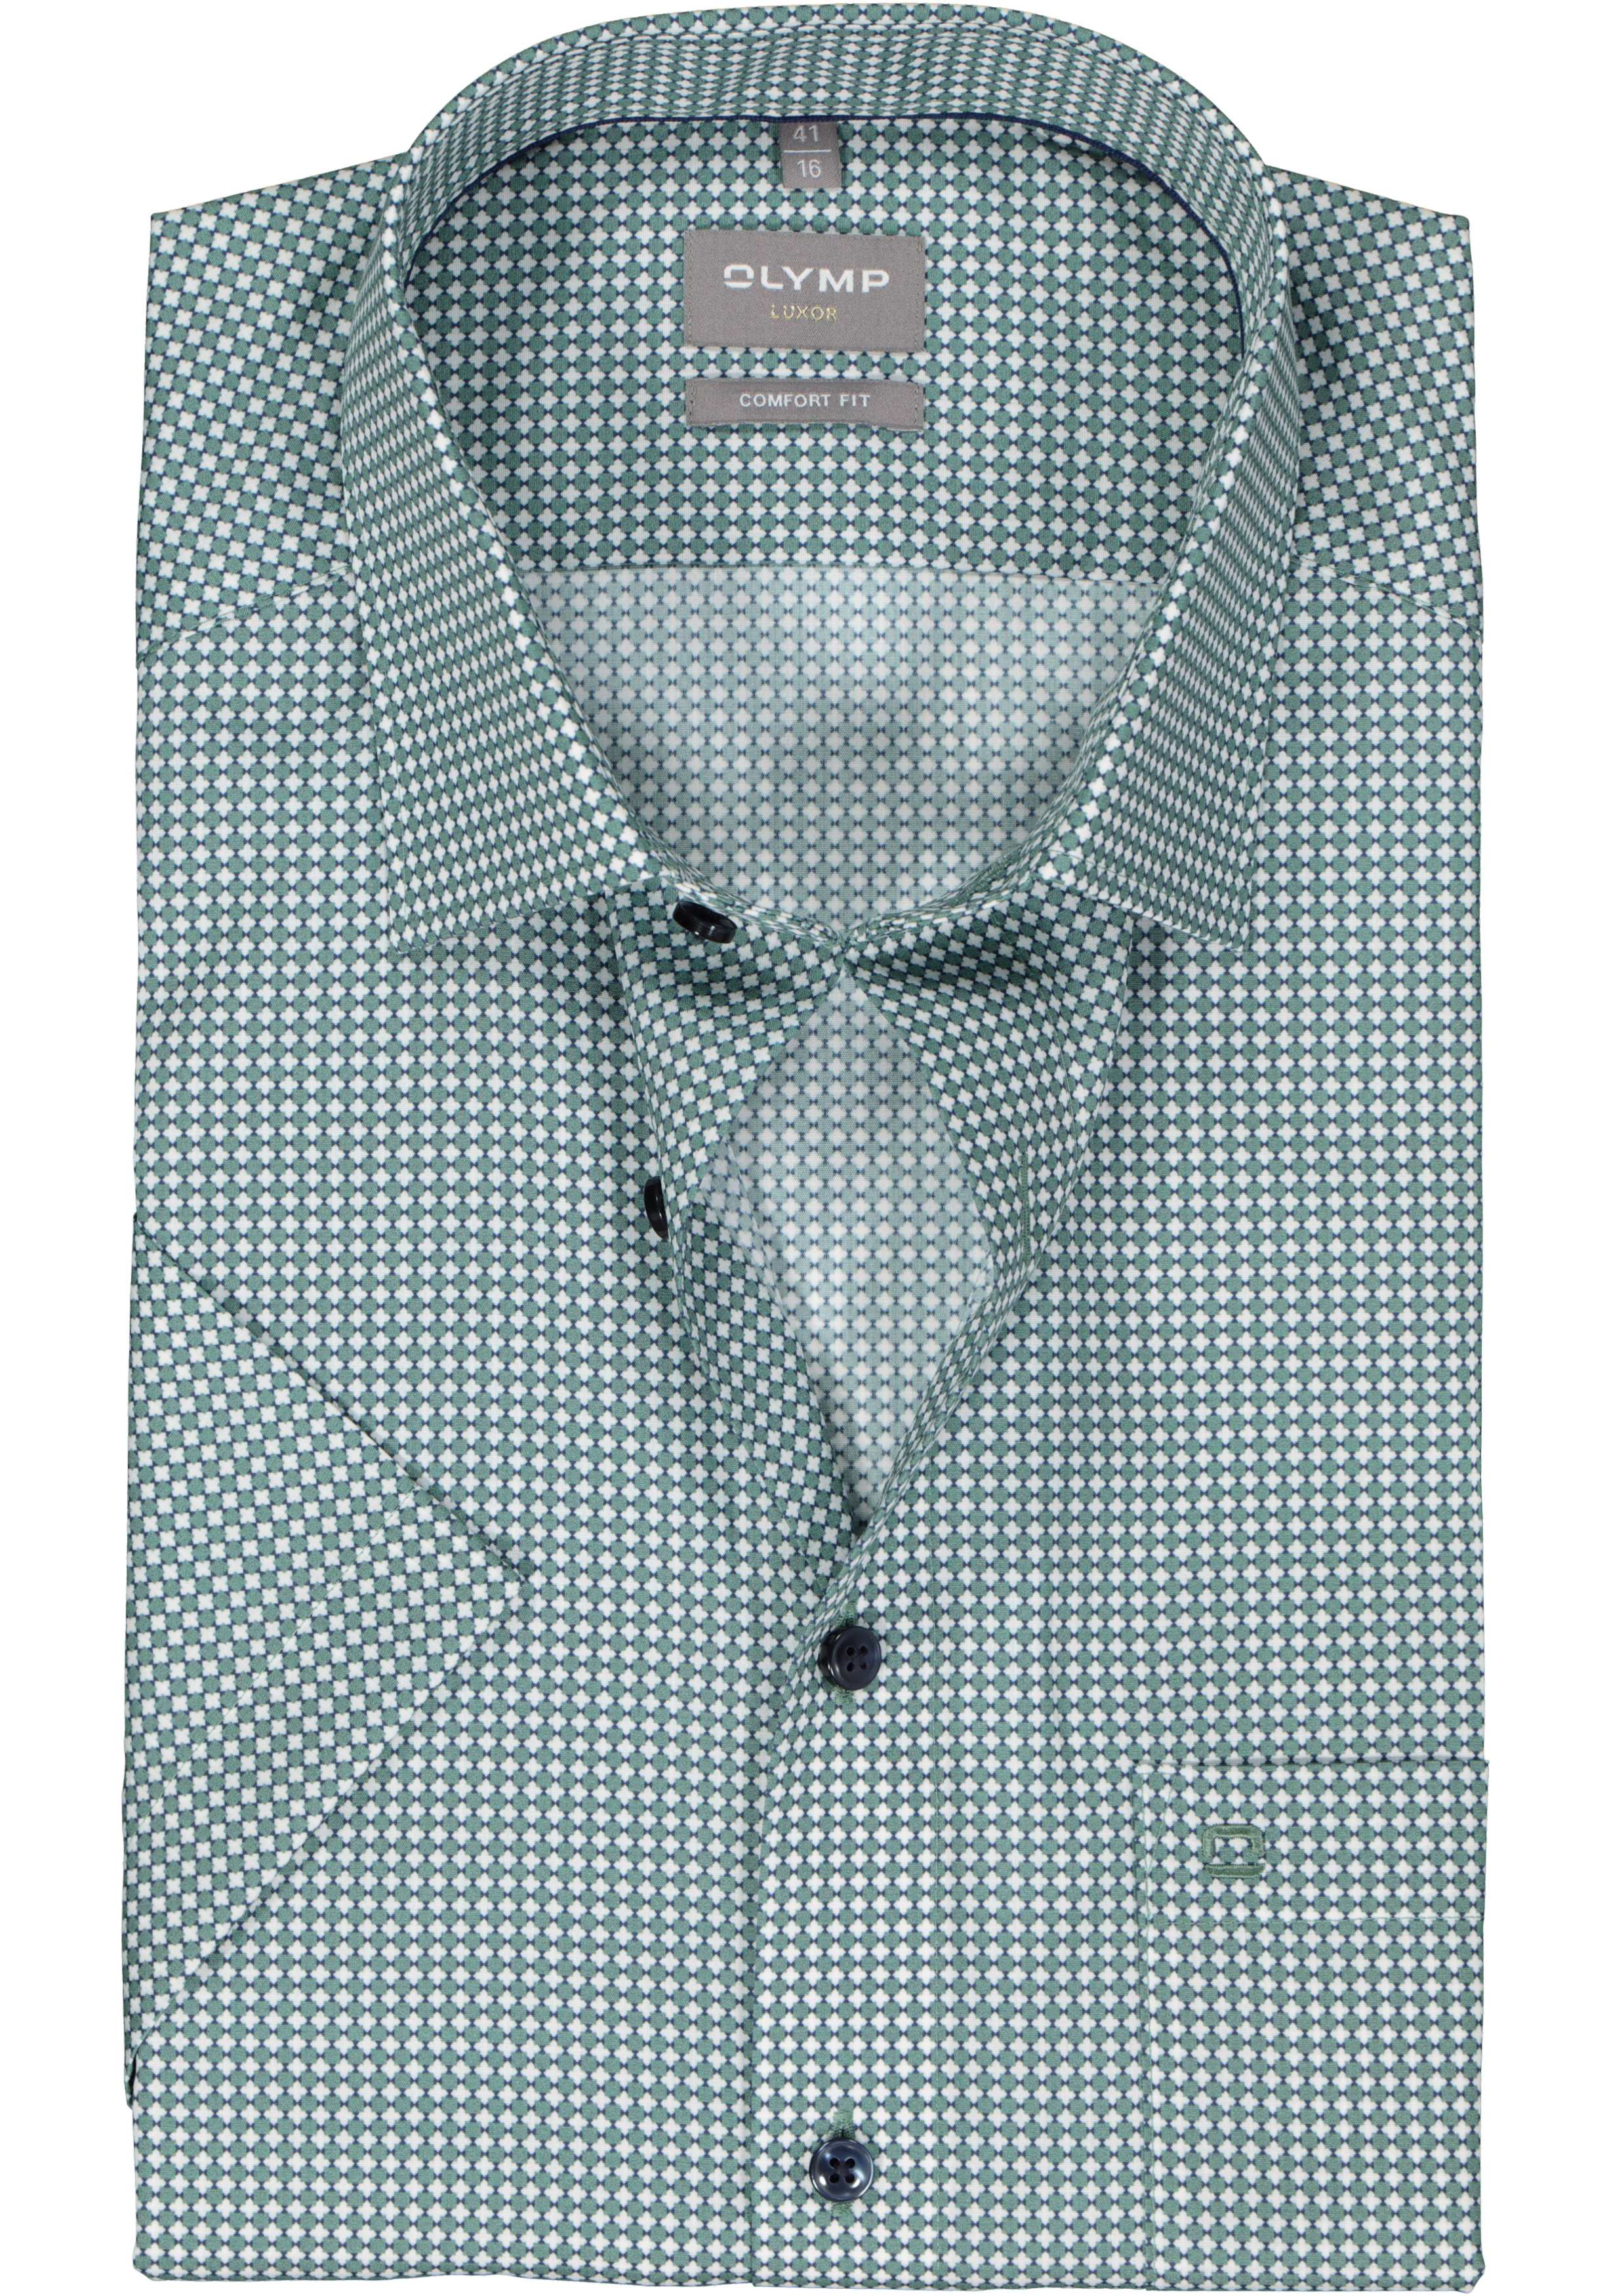 OLYMP comfort fit overhemd, korte mouw, popeline, wit met blauw en groen dessin